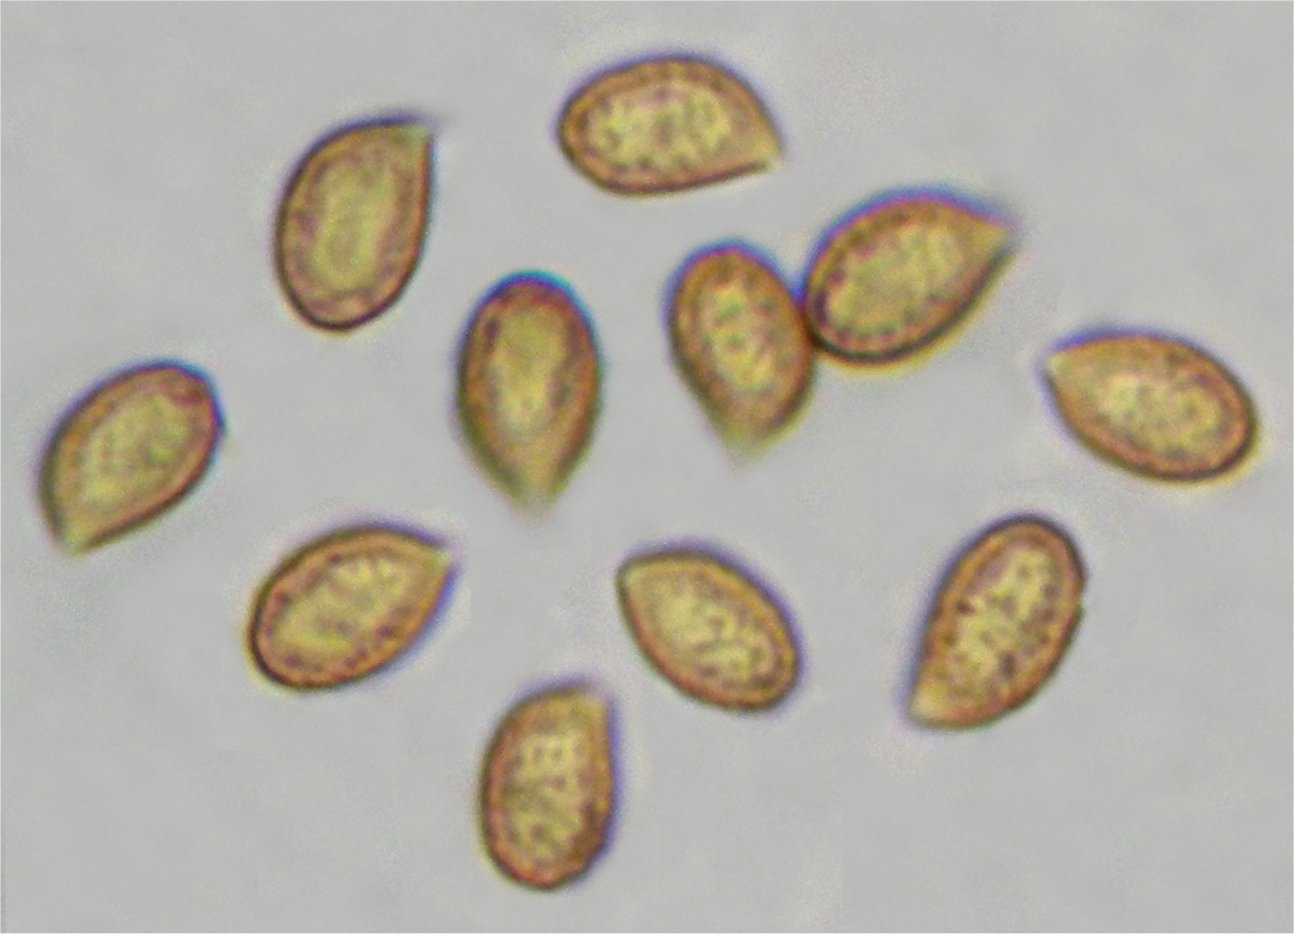 Cortinarius vibratilis 24708 spores.jpg